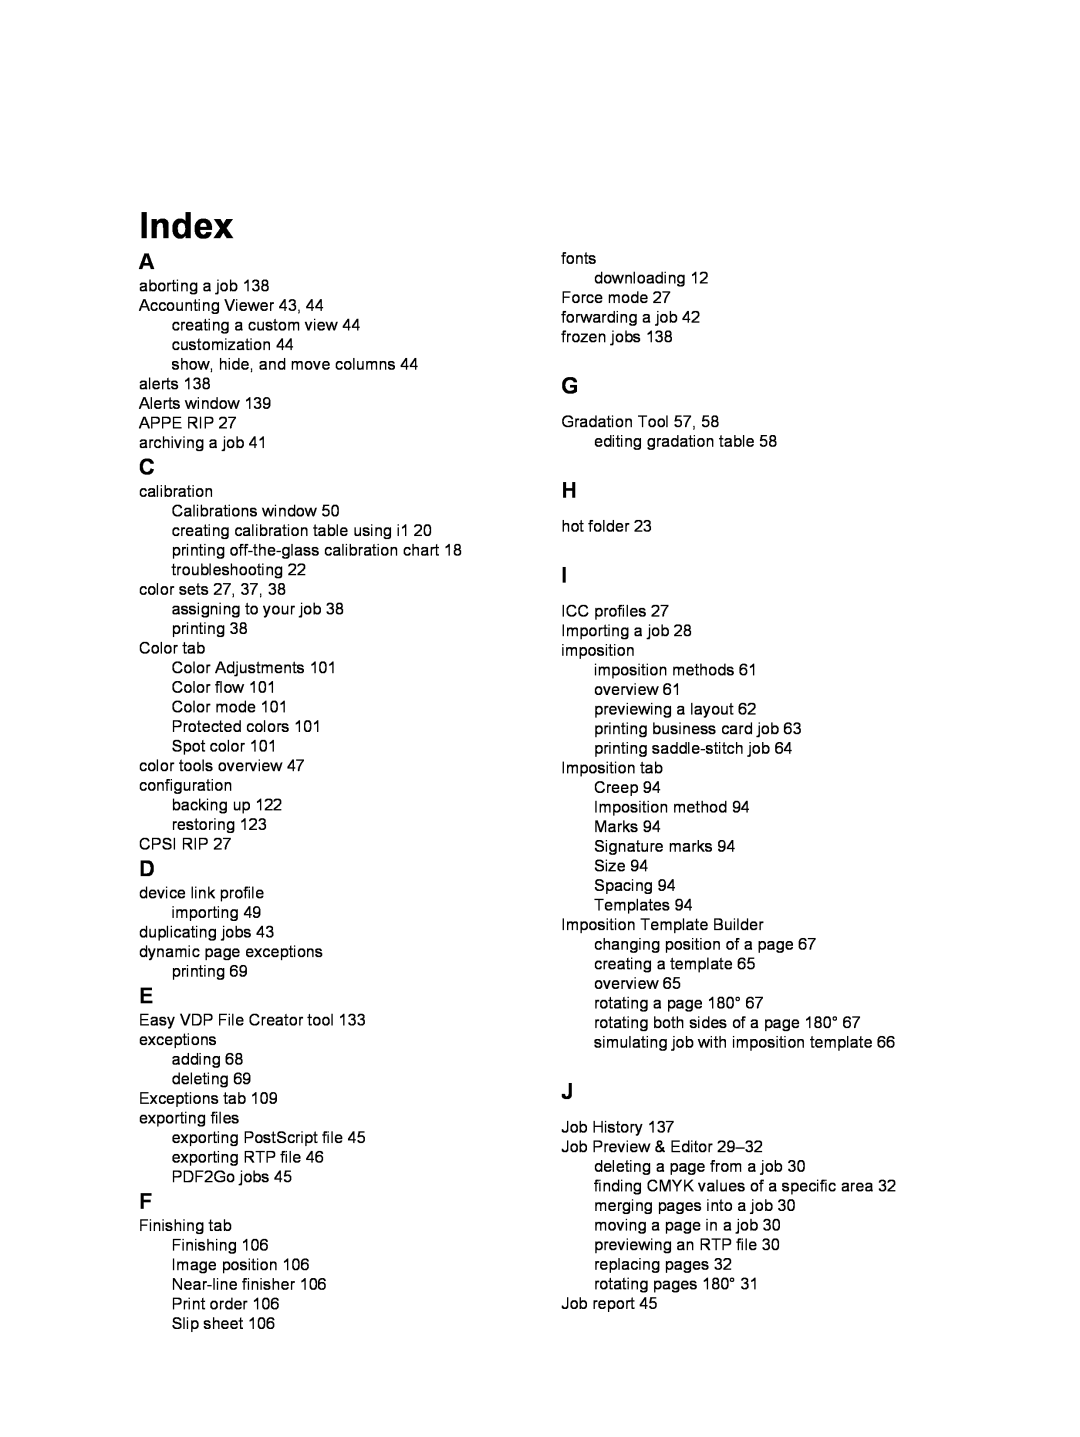 Xerox 550, 560 manual Index 